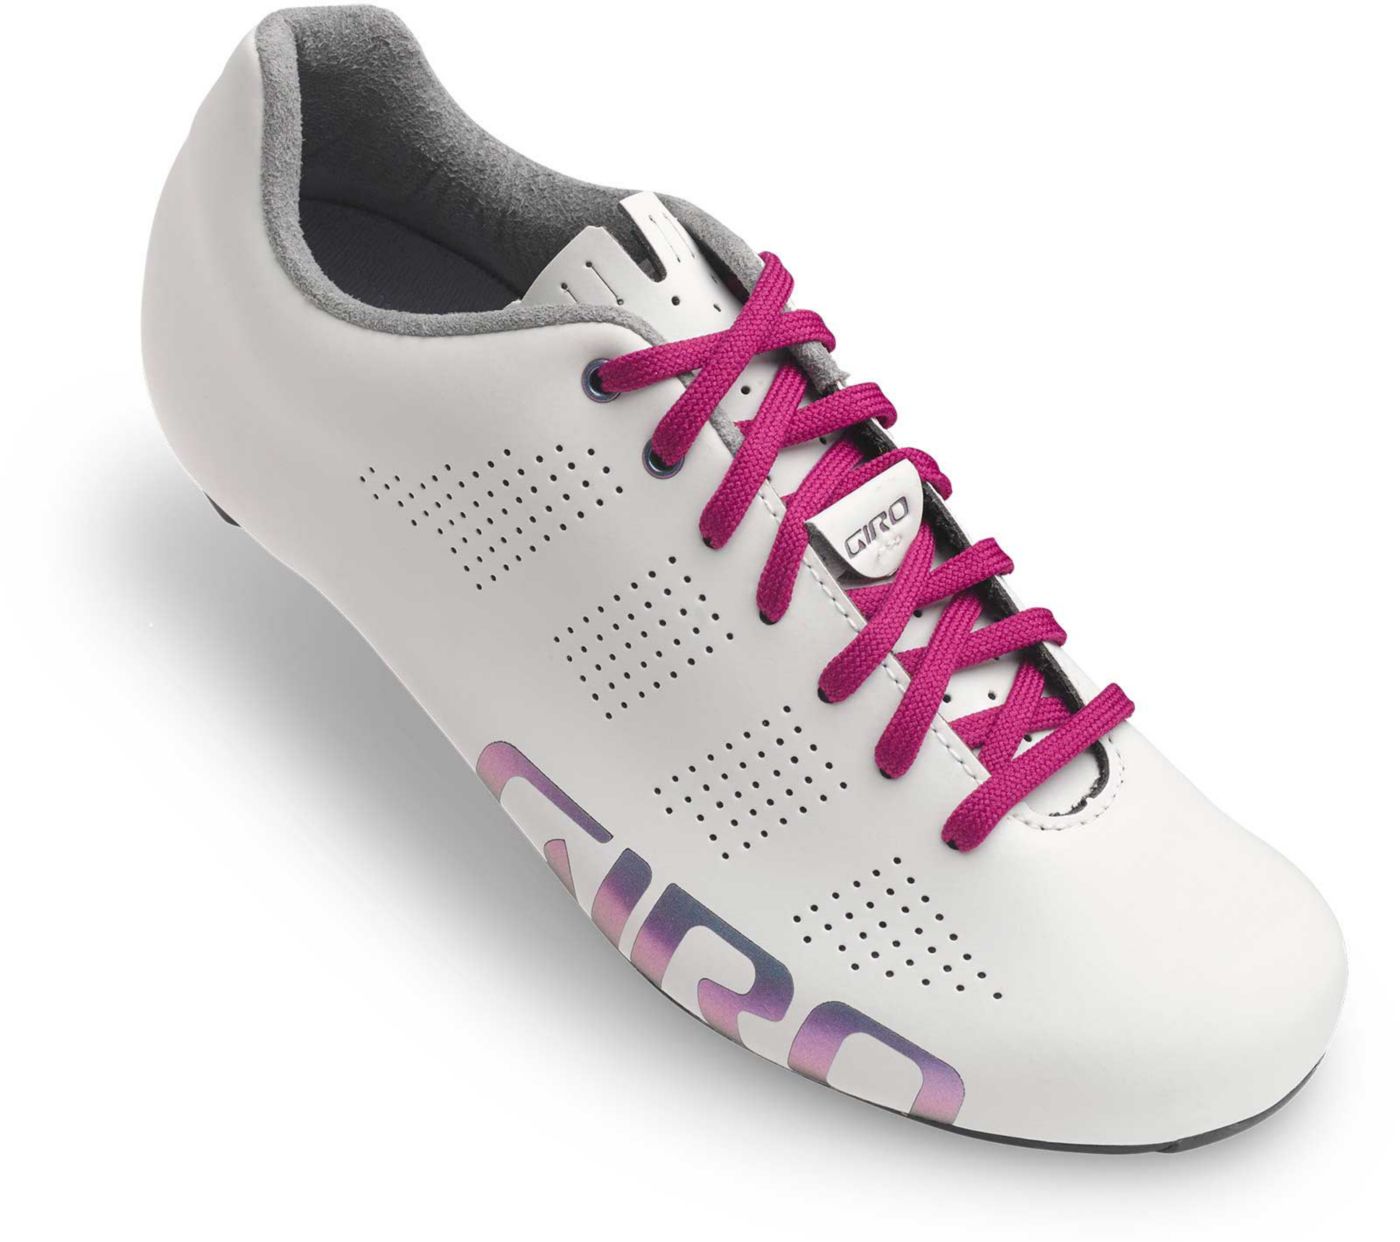 Download Giro Women's Empire Acc Cycling Shoes | DICK'S Sporting Goods